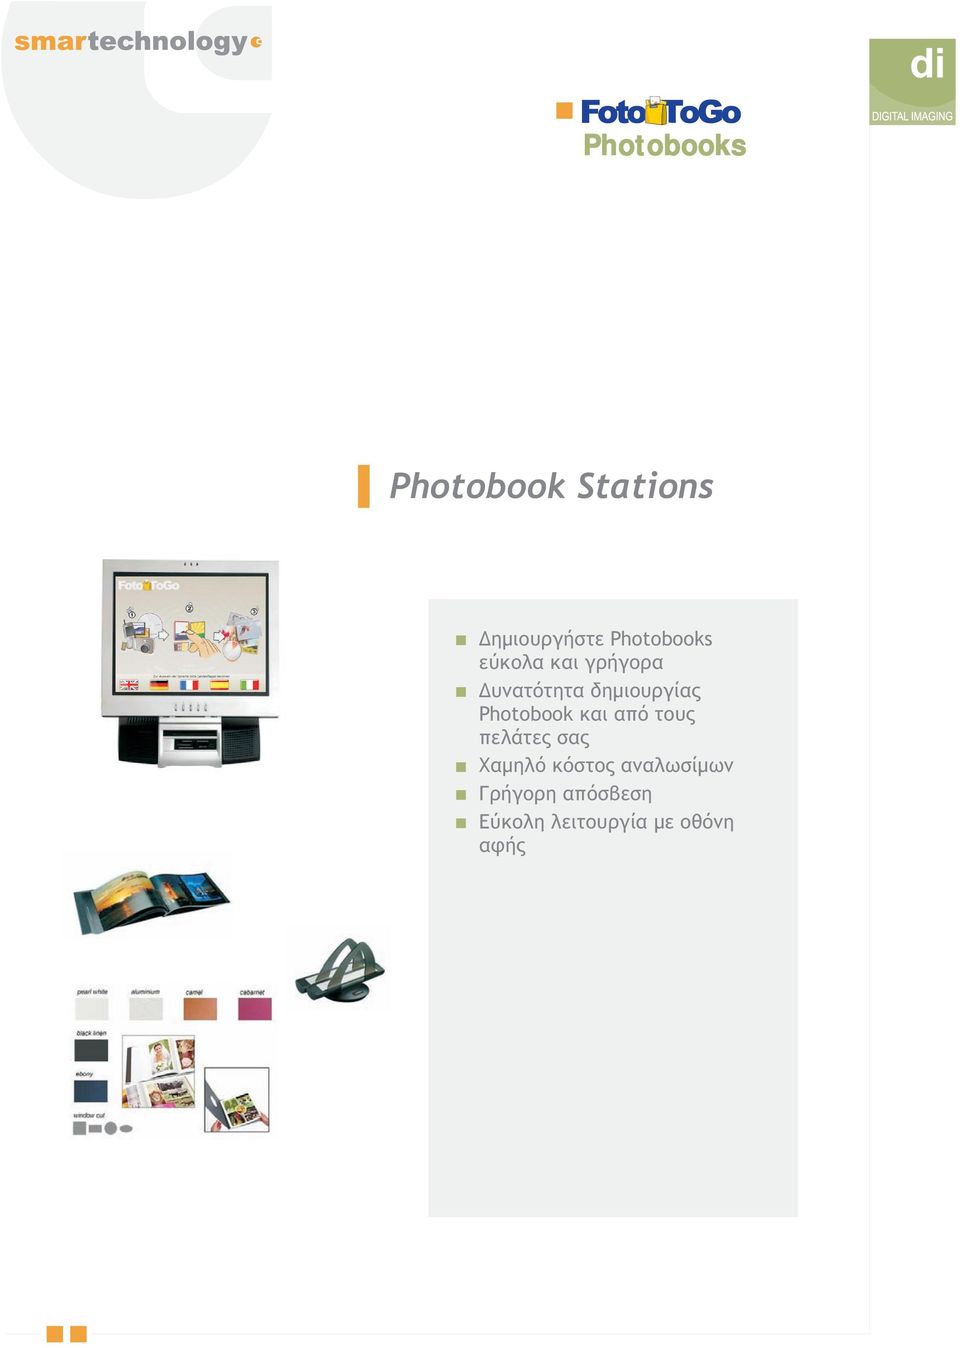 δημιουργίας Photobook και από τους πελάτες σας